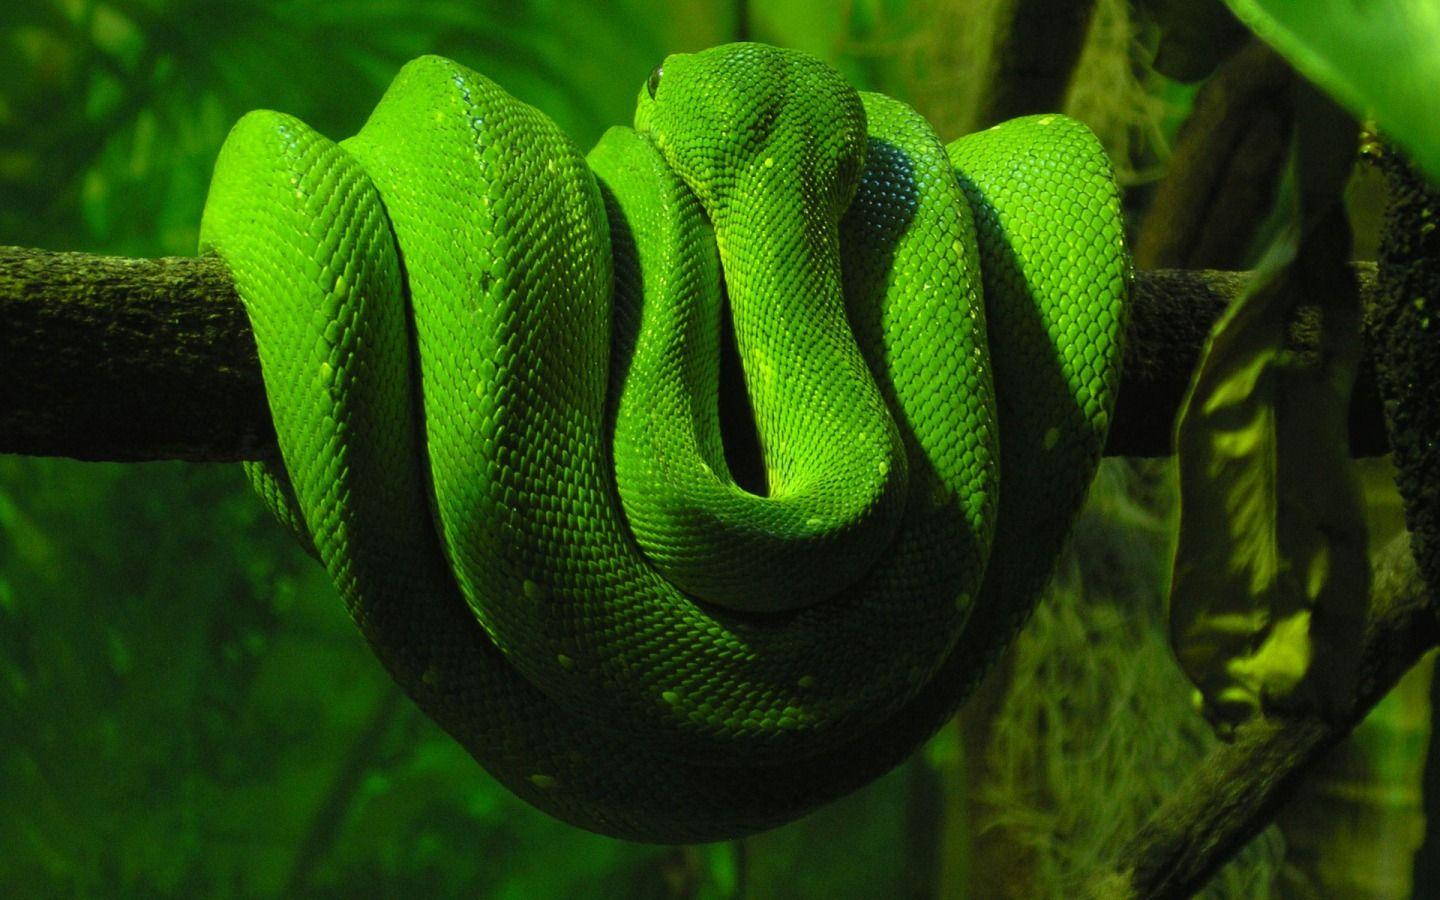 Viper Snake Wallpaper High Quality #viper #snake. Snake